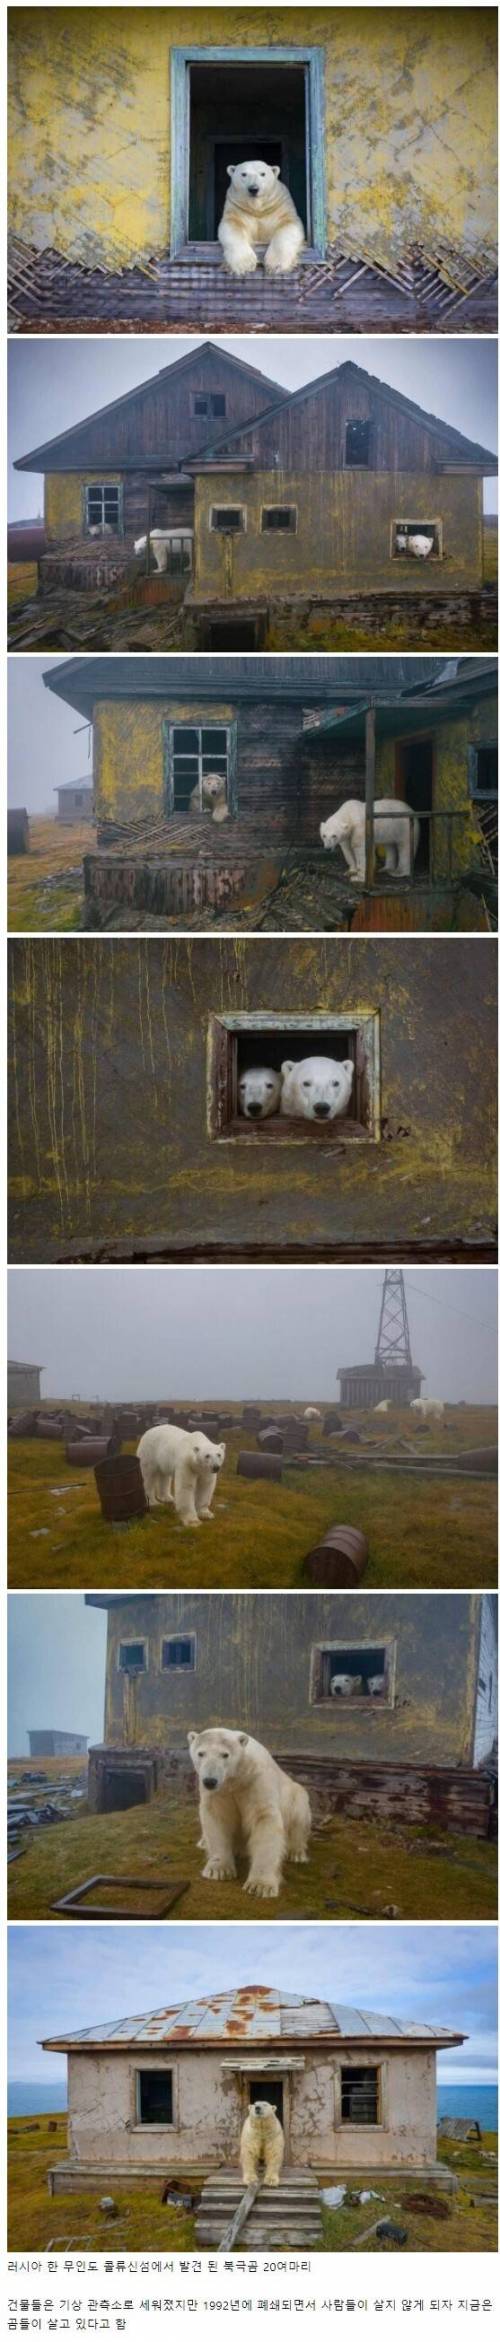 인간이 버린 건물에서 사는 북극곰